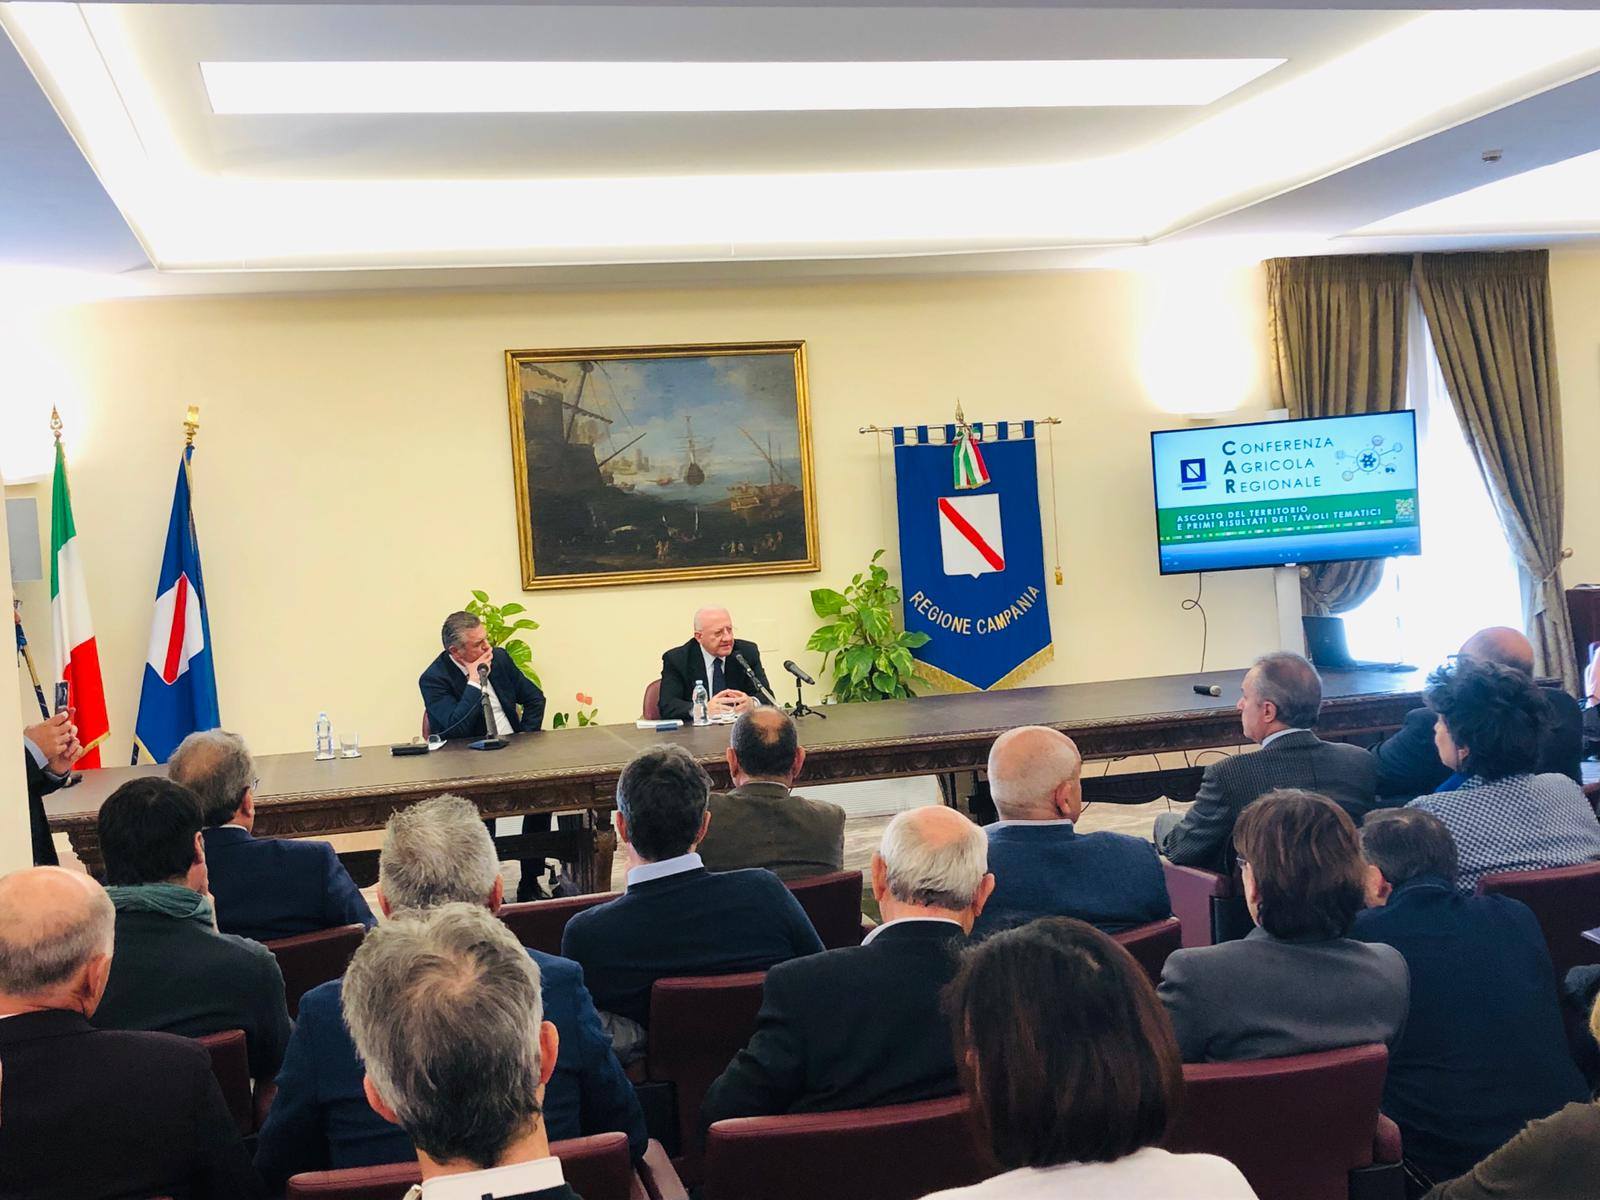 Presentati obiettivi e attività della Conferenza Agricola Regionale della Campania